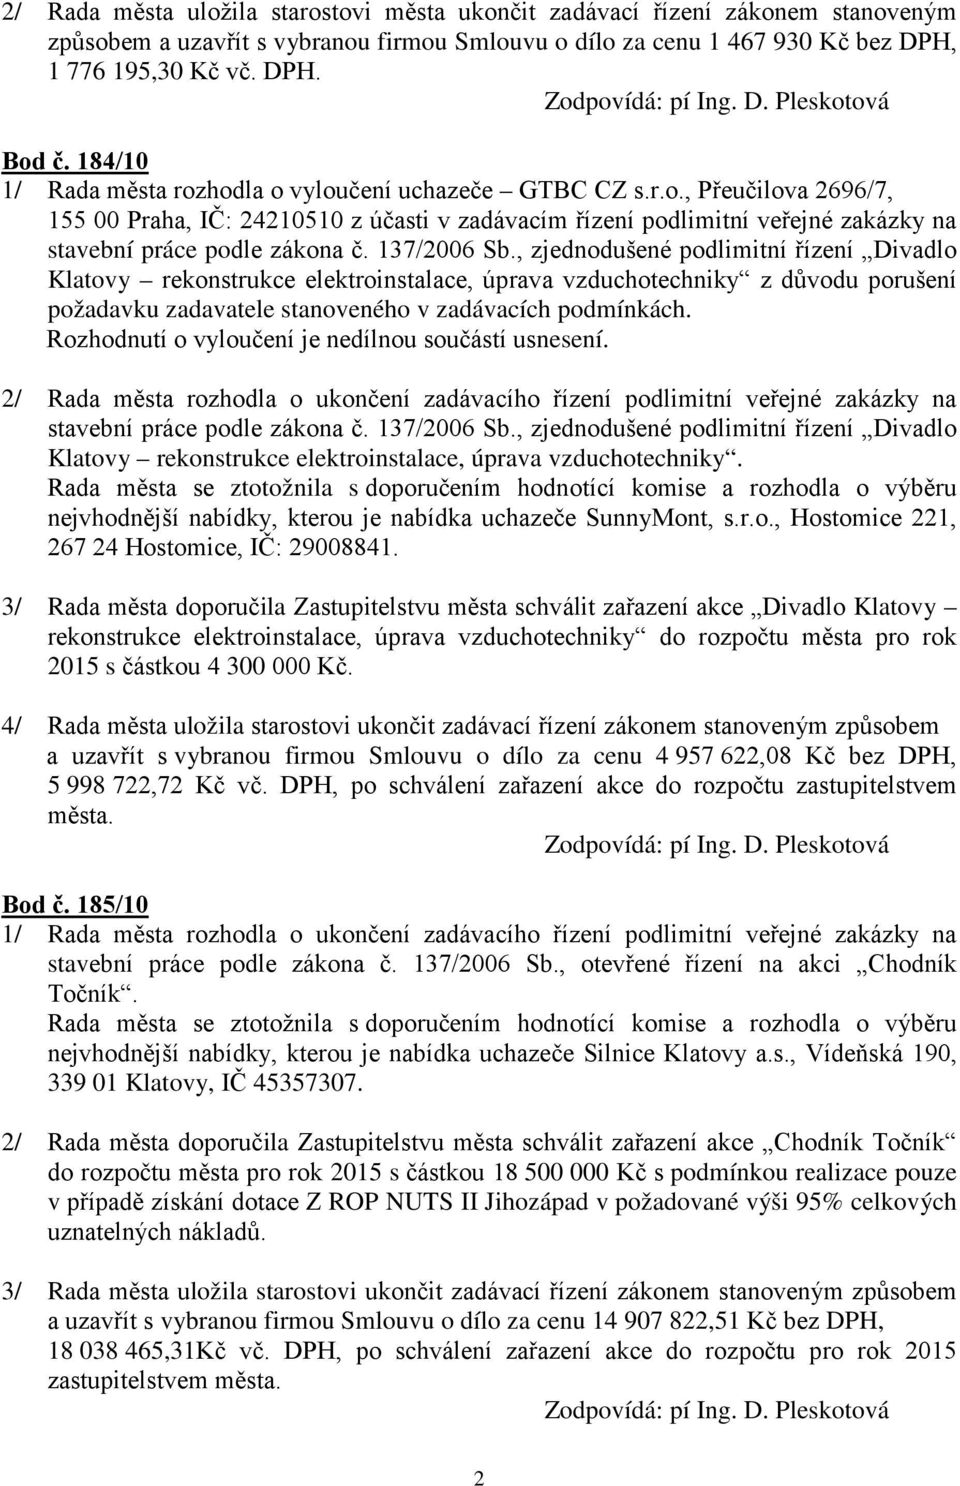 137/2006 Sb., zjednodušené podlimitní řízení Divadlo Klatovy rekonstrukce elektroinstalace, úprava vzduchotechniky z důvodu porušení požadavku zadavatele stanoveného v zadávacích podmínkách.